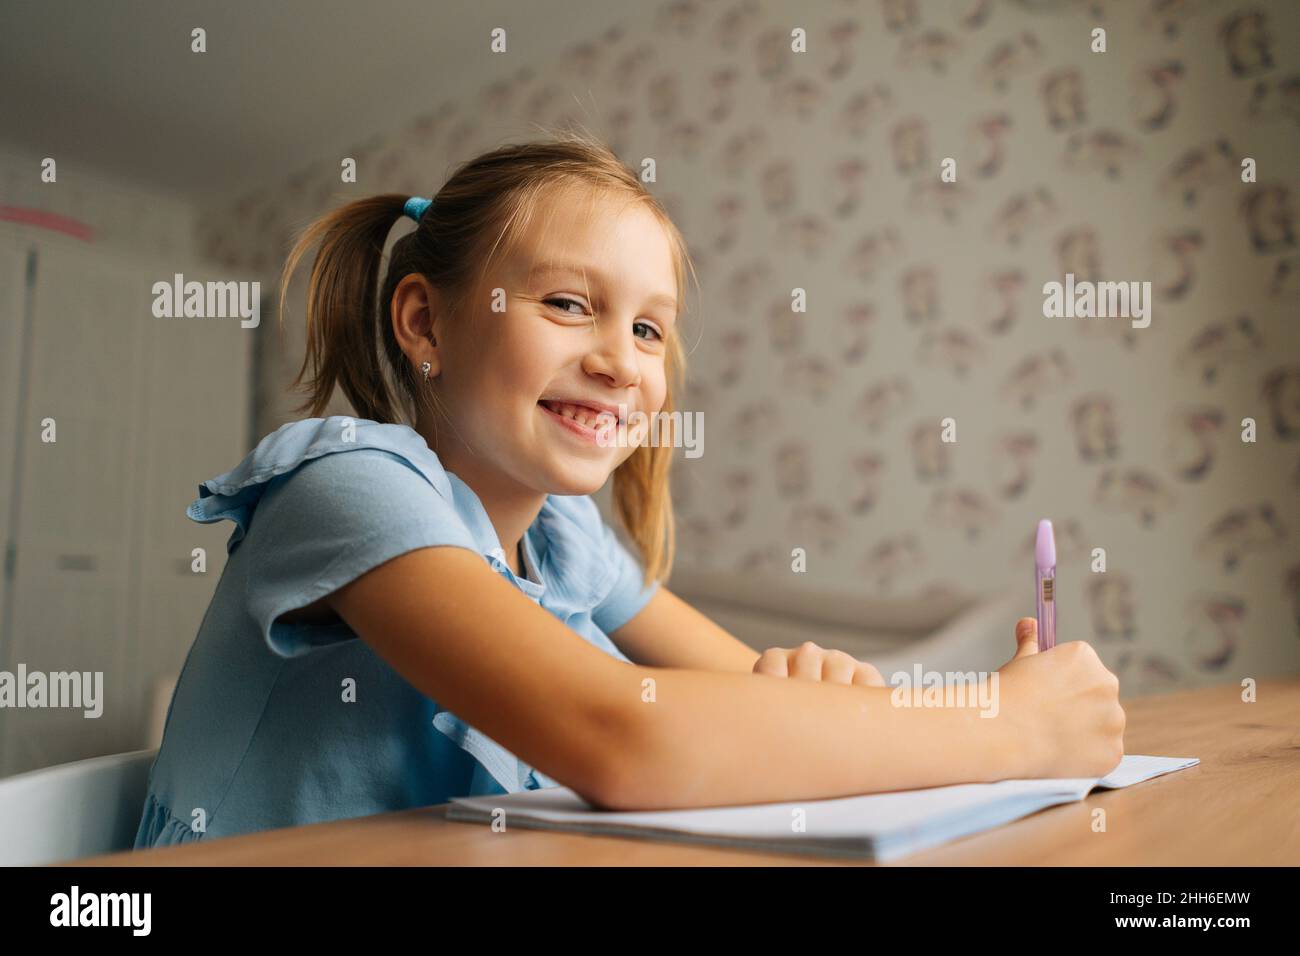 Nahaufnahme von lächelndem, elementarem kleinen Mädchen, das Hausaufgaben macht und am heimischen Tisch am Fenster sitzt und die Kamera anschaut. Stockfoto